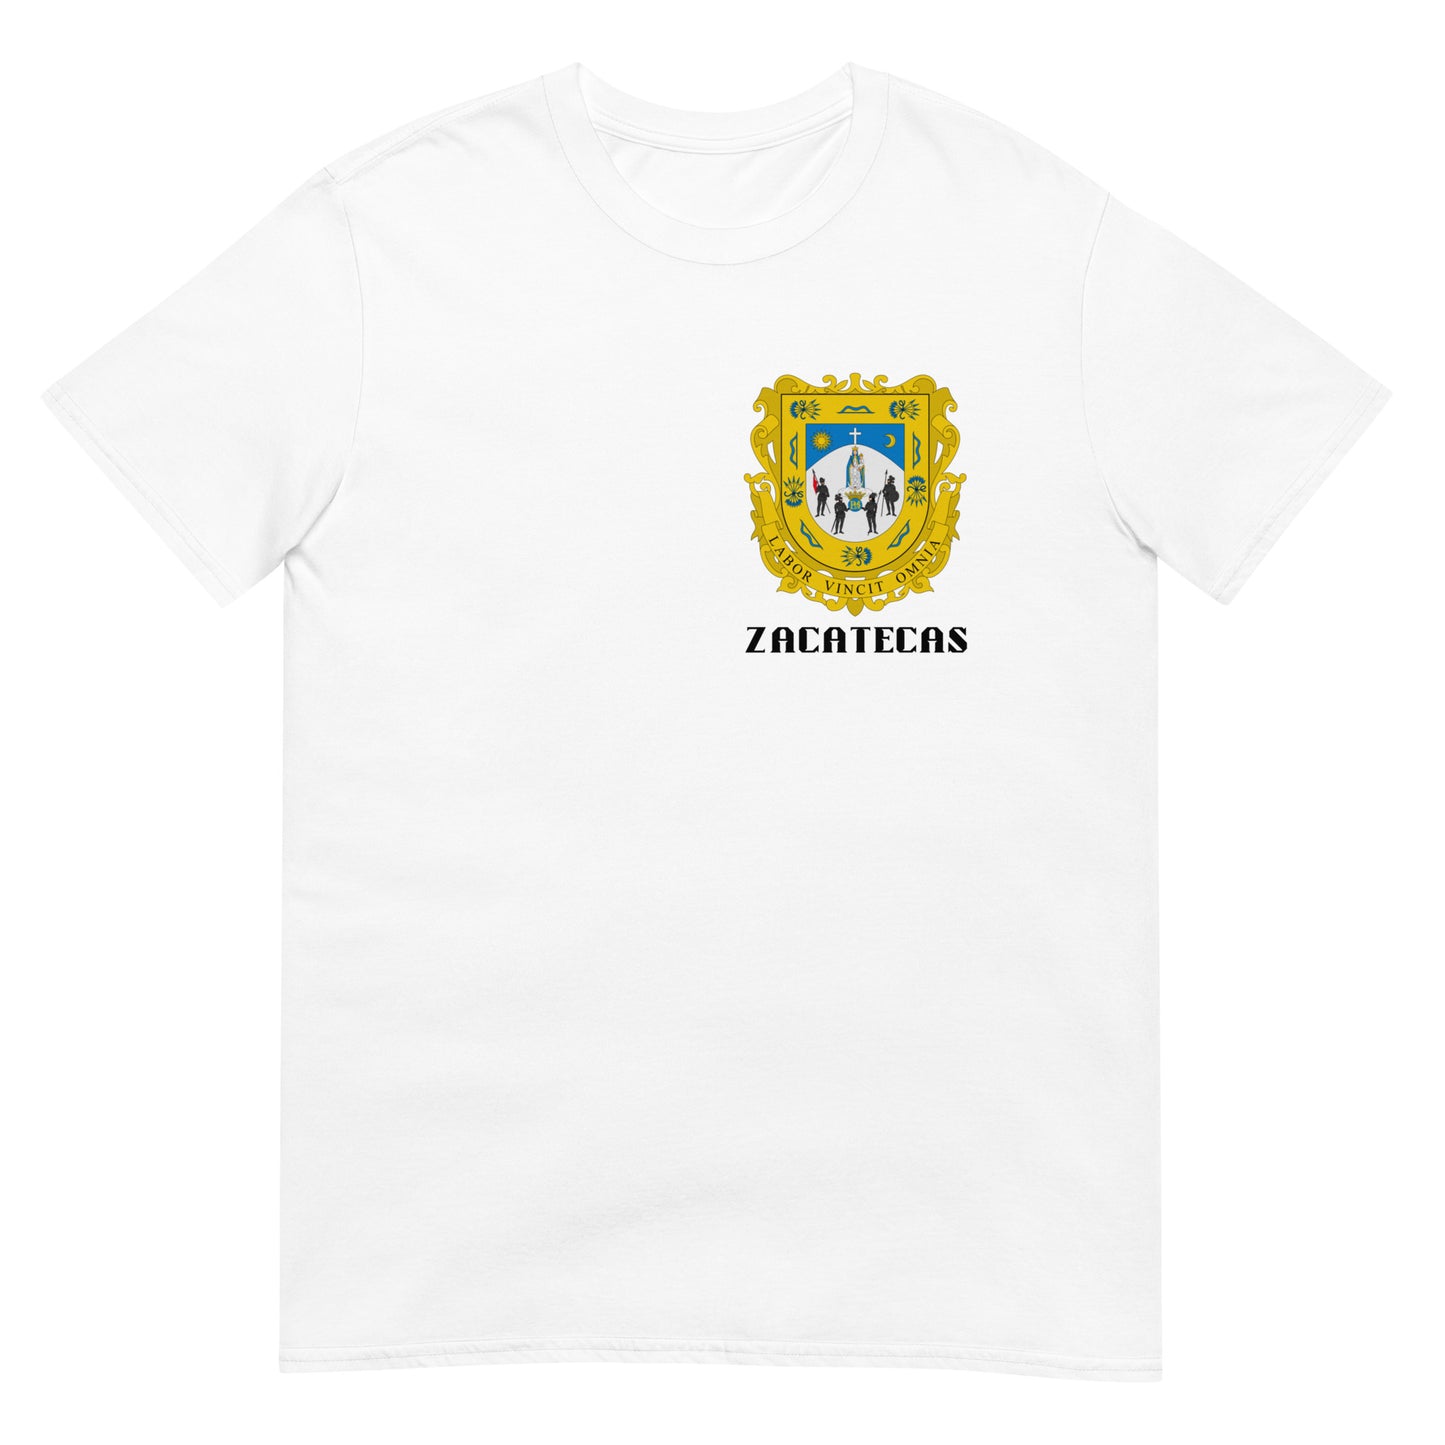 Zacatecas- T-Shirt